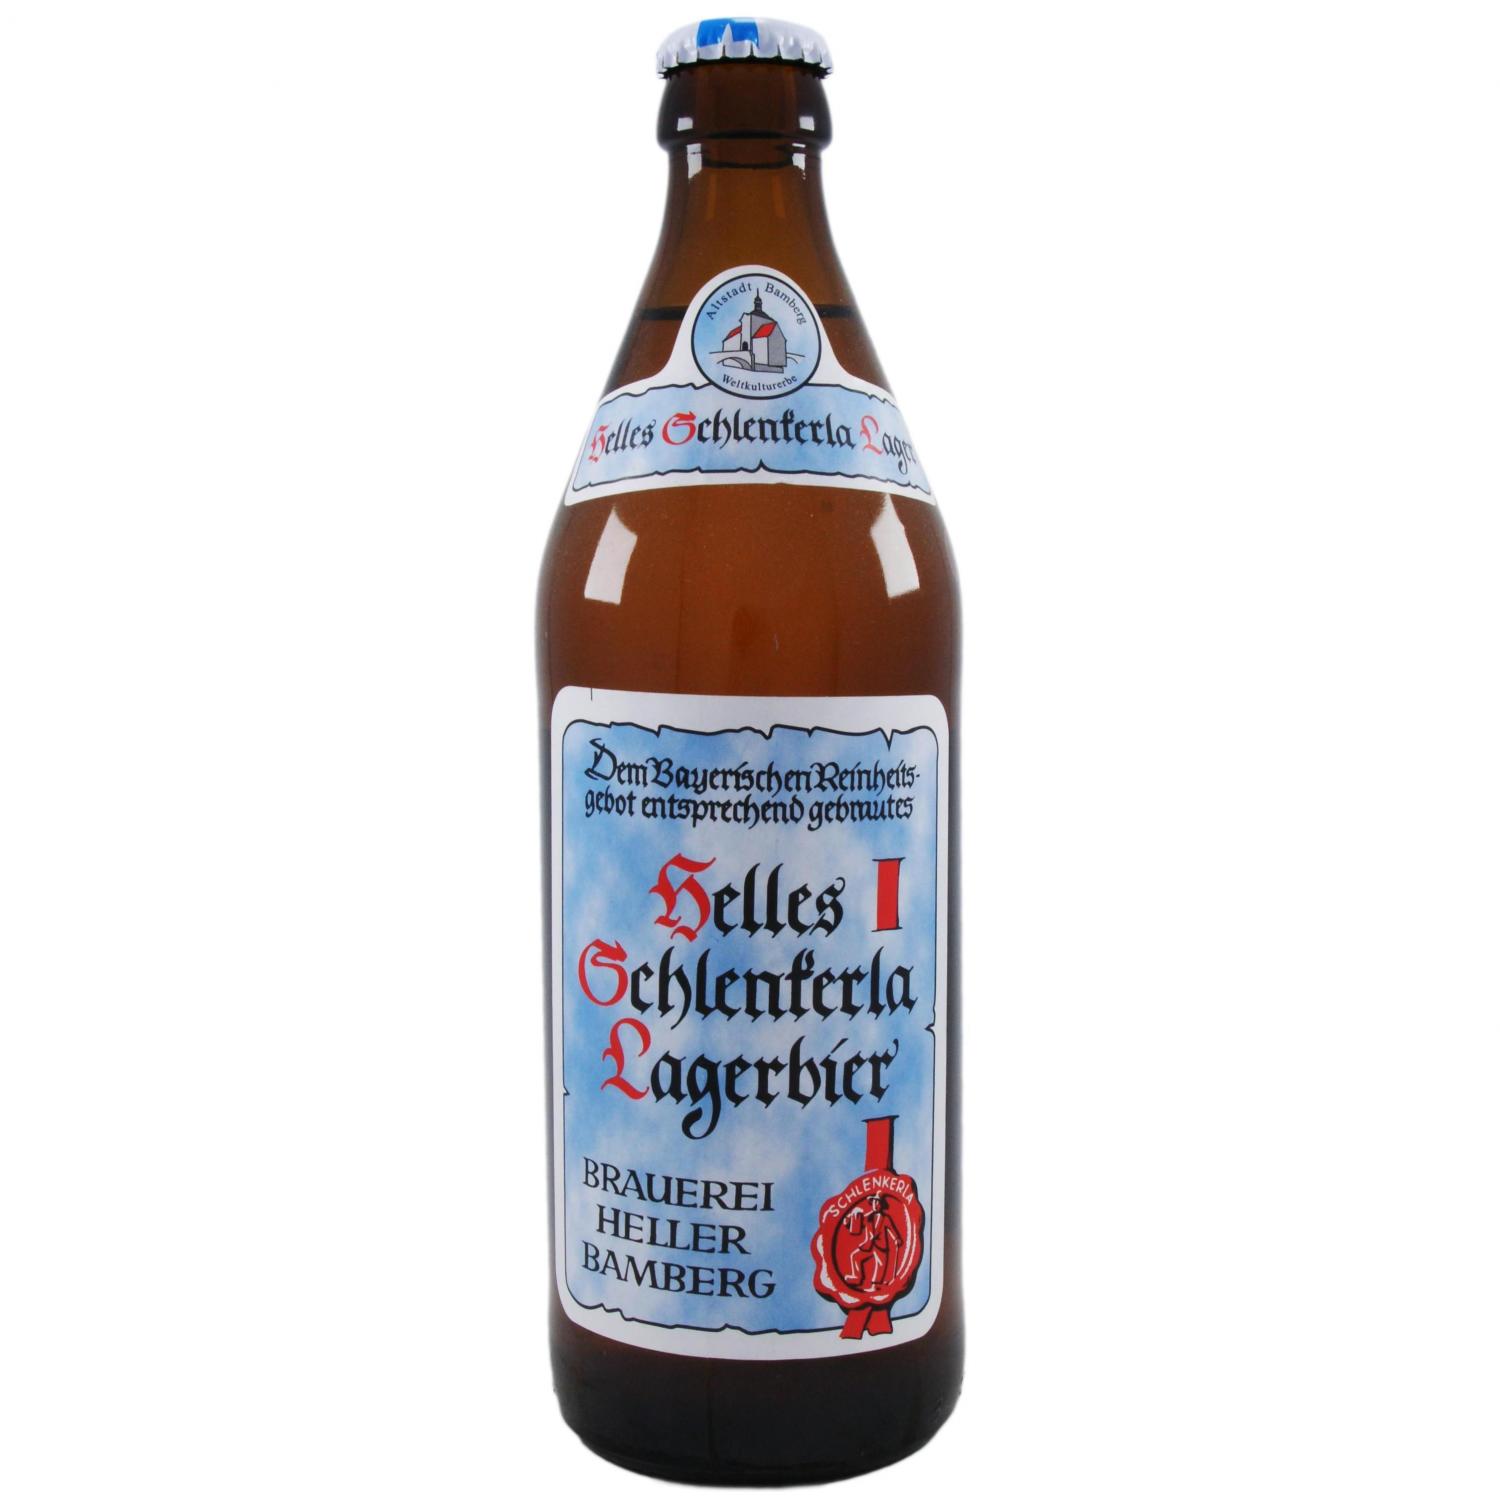 Пиво Schlenkerla Helles Lagerbie светлое фильтрованное в Киеве и пригороде:  купить по хорошей цене с доставкой. Розница, фасовка 0,5л